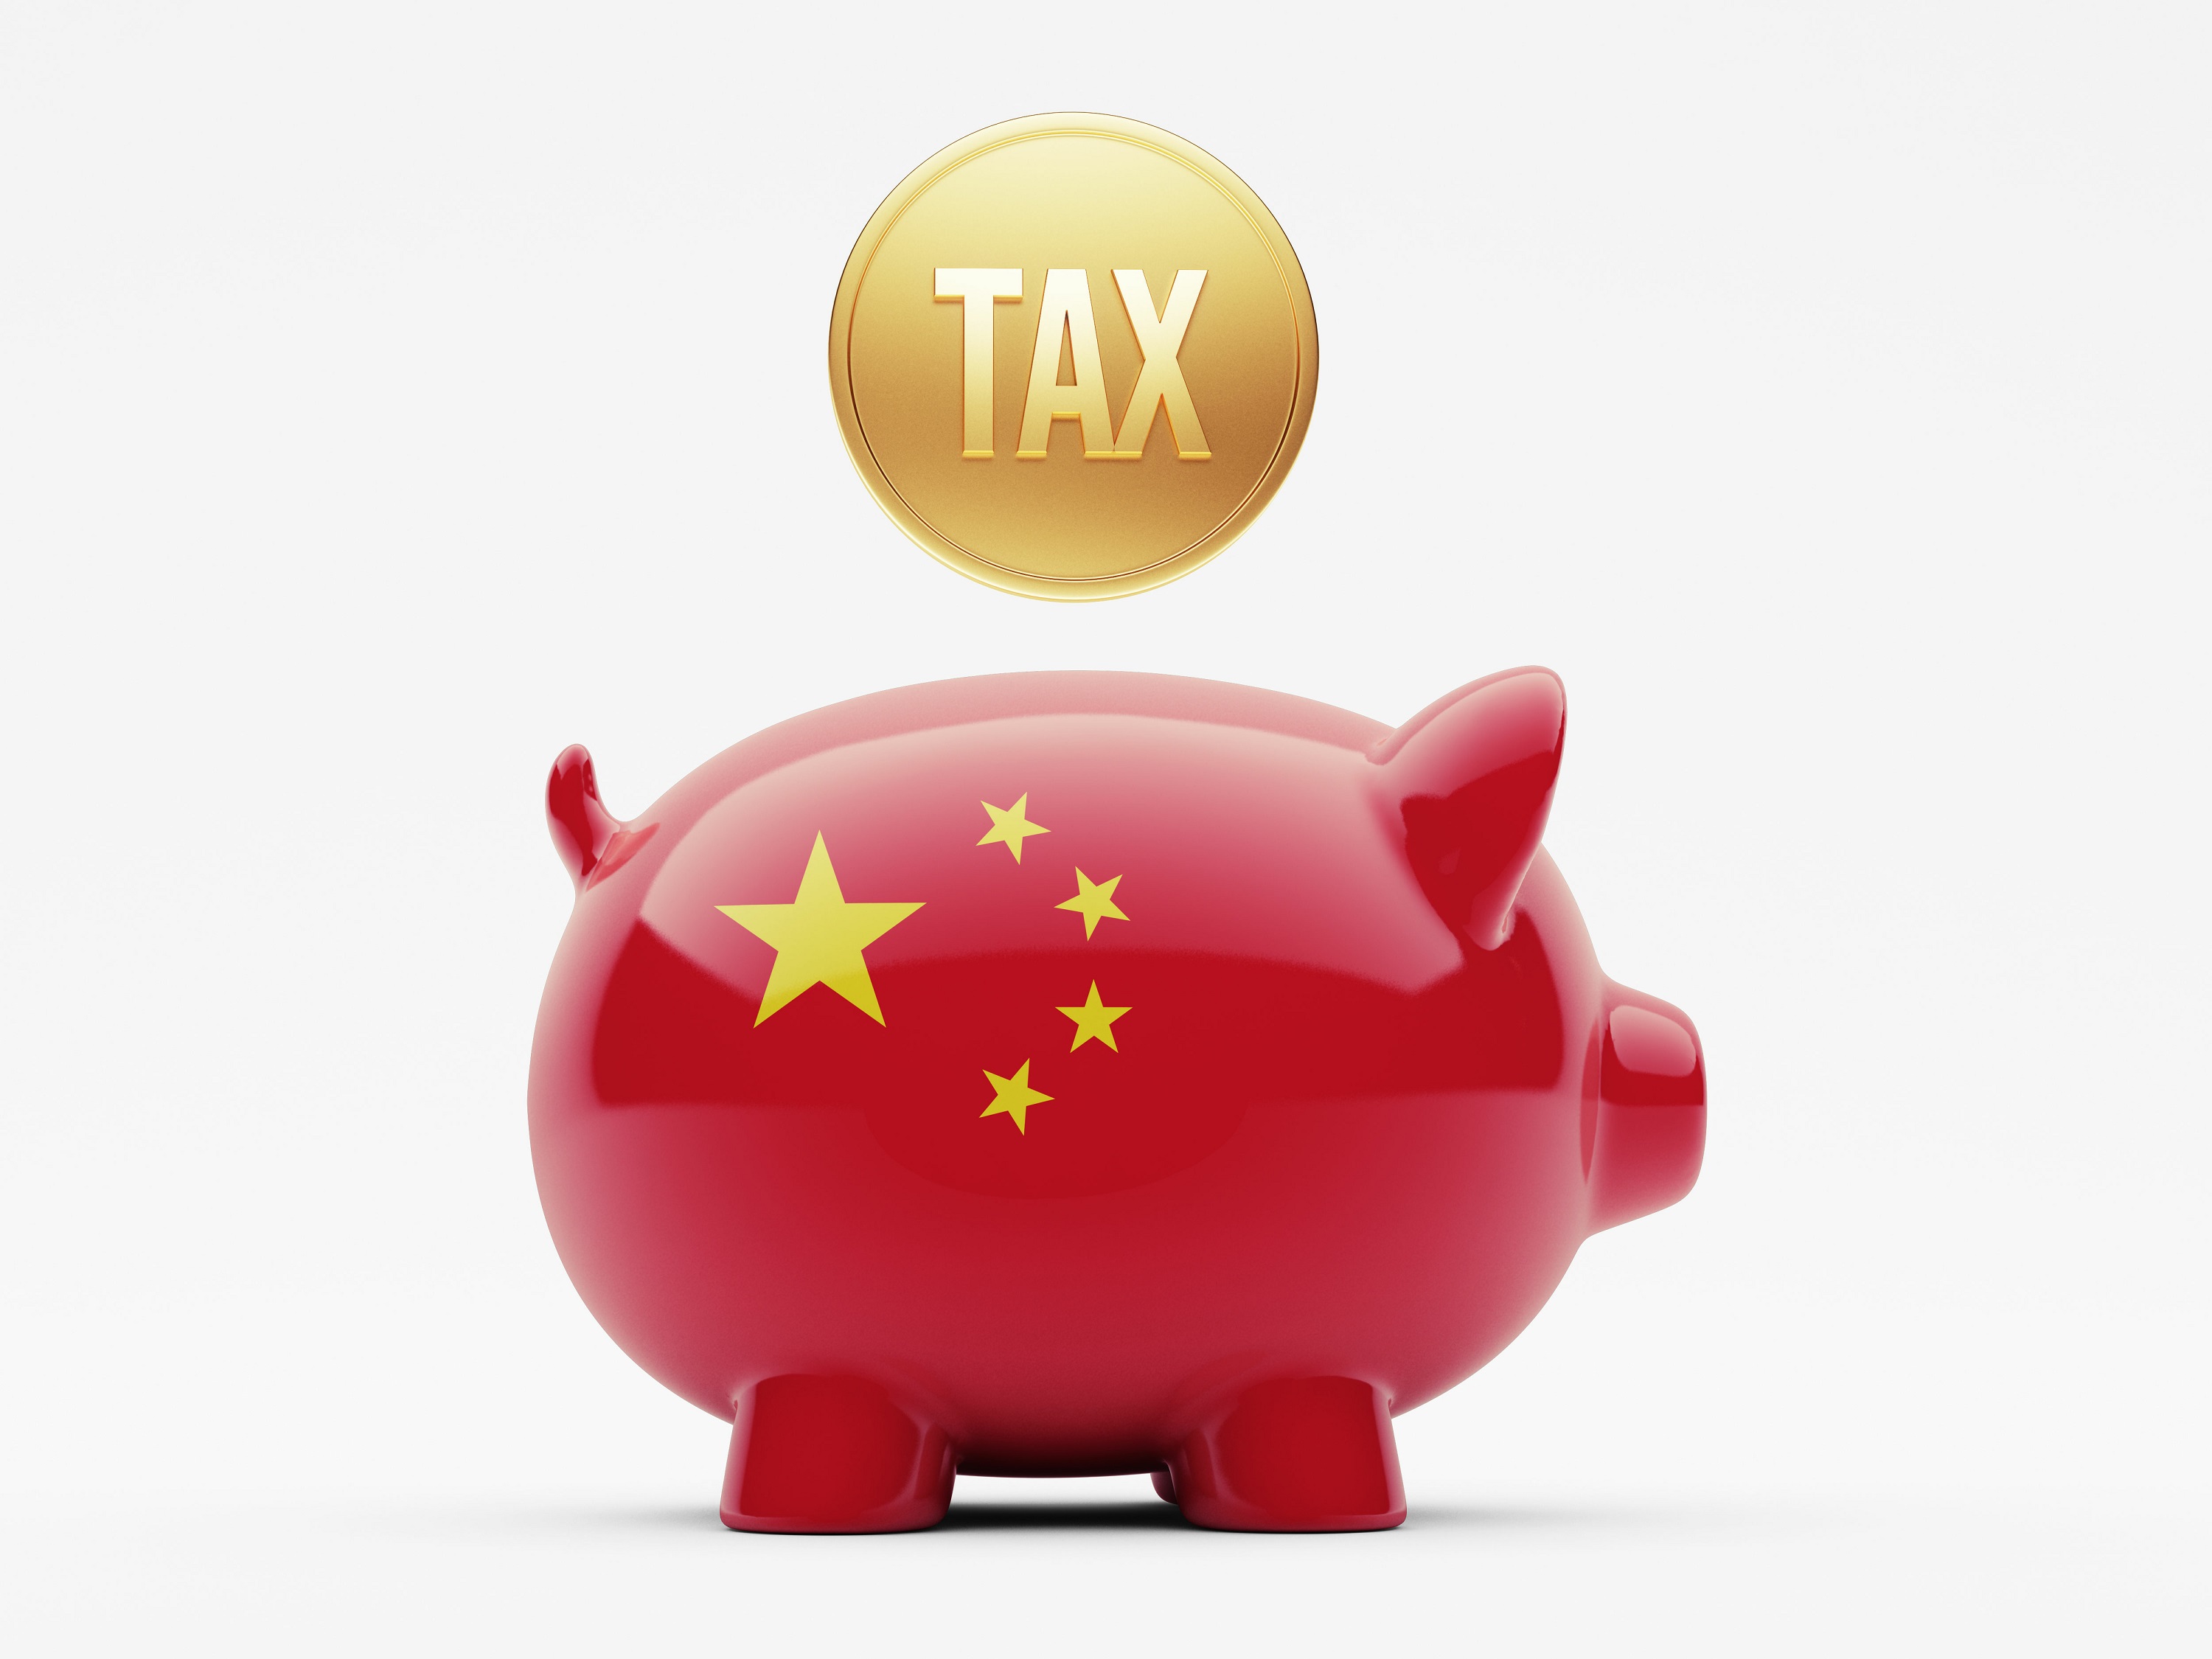 一枚帶有“稅”字樣的金幣上面掛著一個裝飾著中國國旗顏色的存錢罐上方。